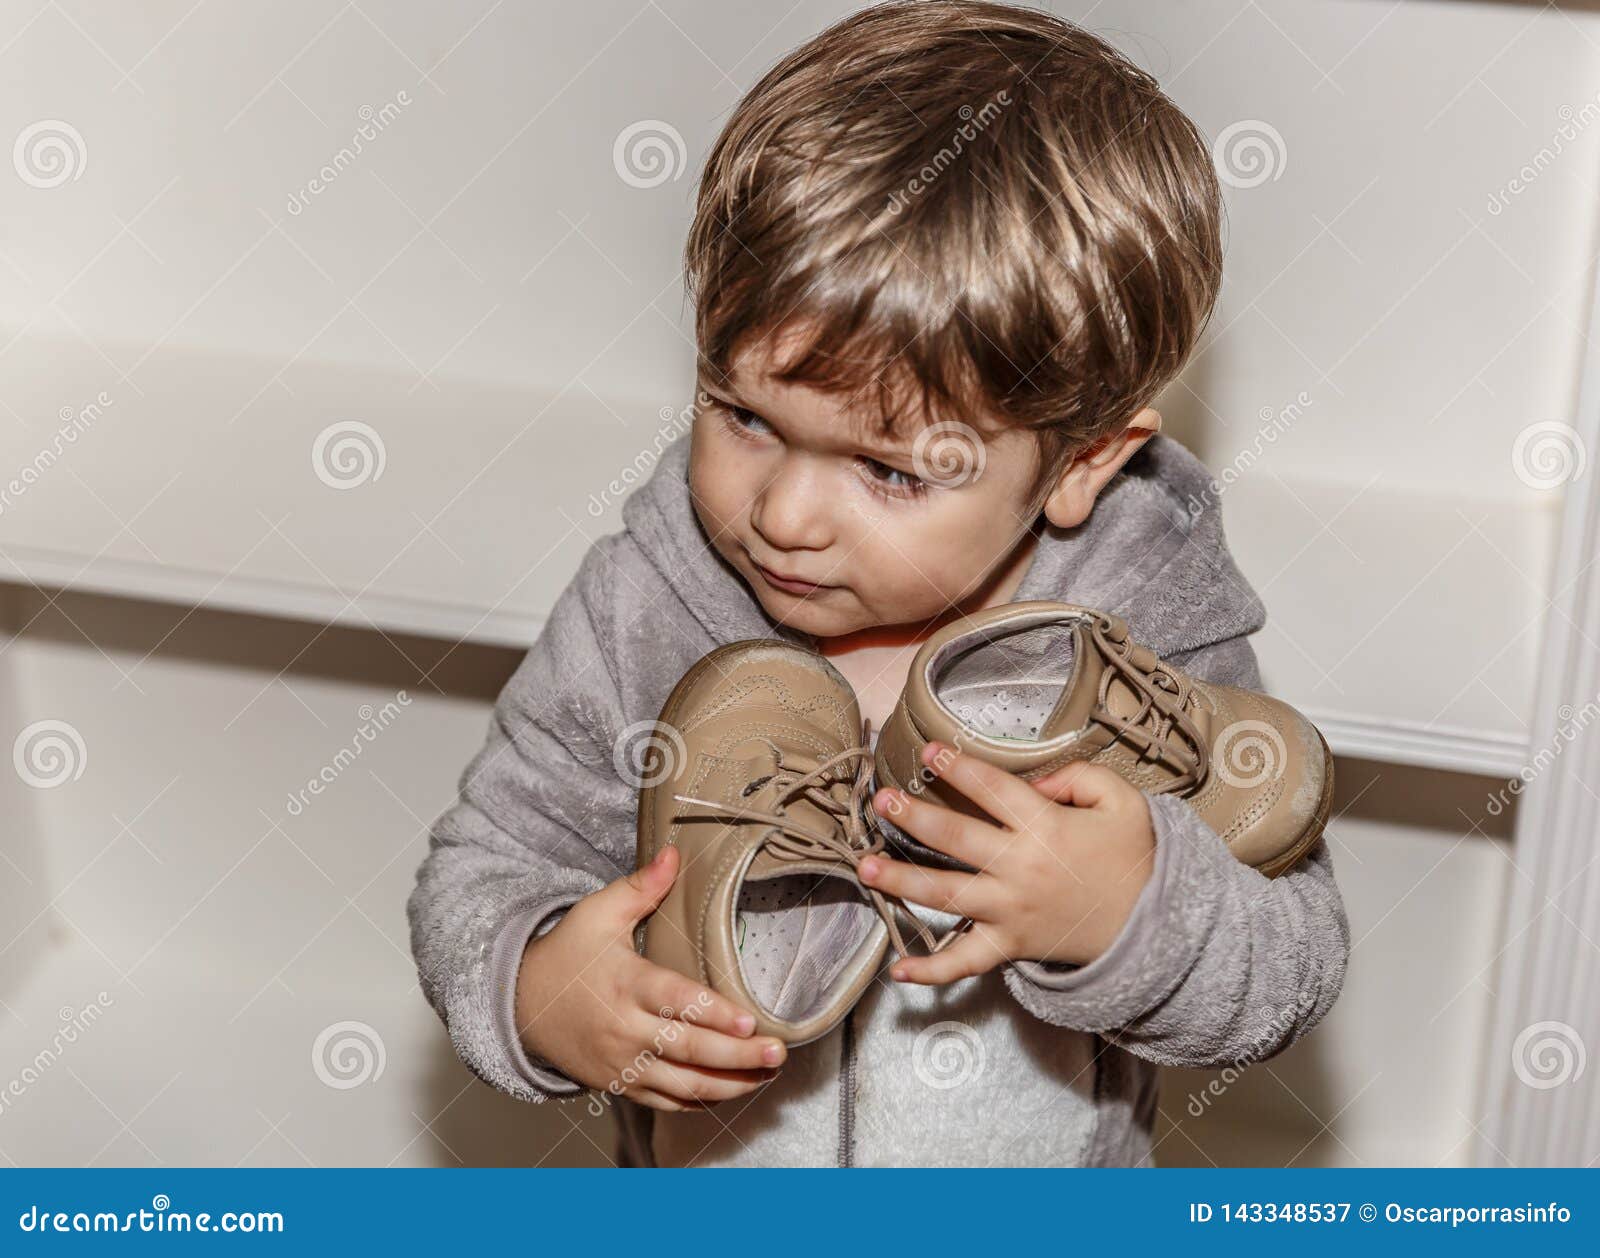 Un Niño Pequeño Con Una Cara Del Granuja Tiene Sus Pequeños Zapatos En Sus Manos Imagen de archivo - Imagen de divertido, zapatos: 143348537